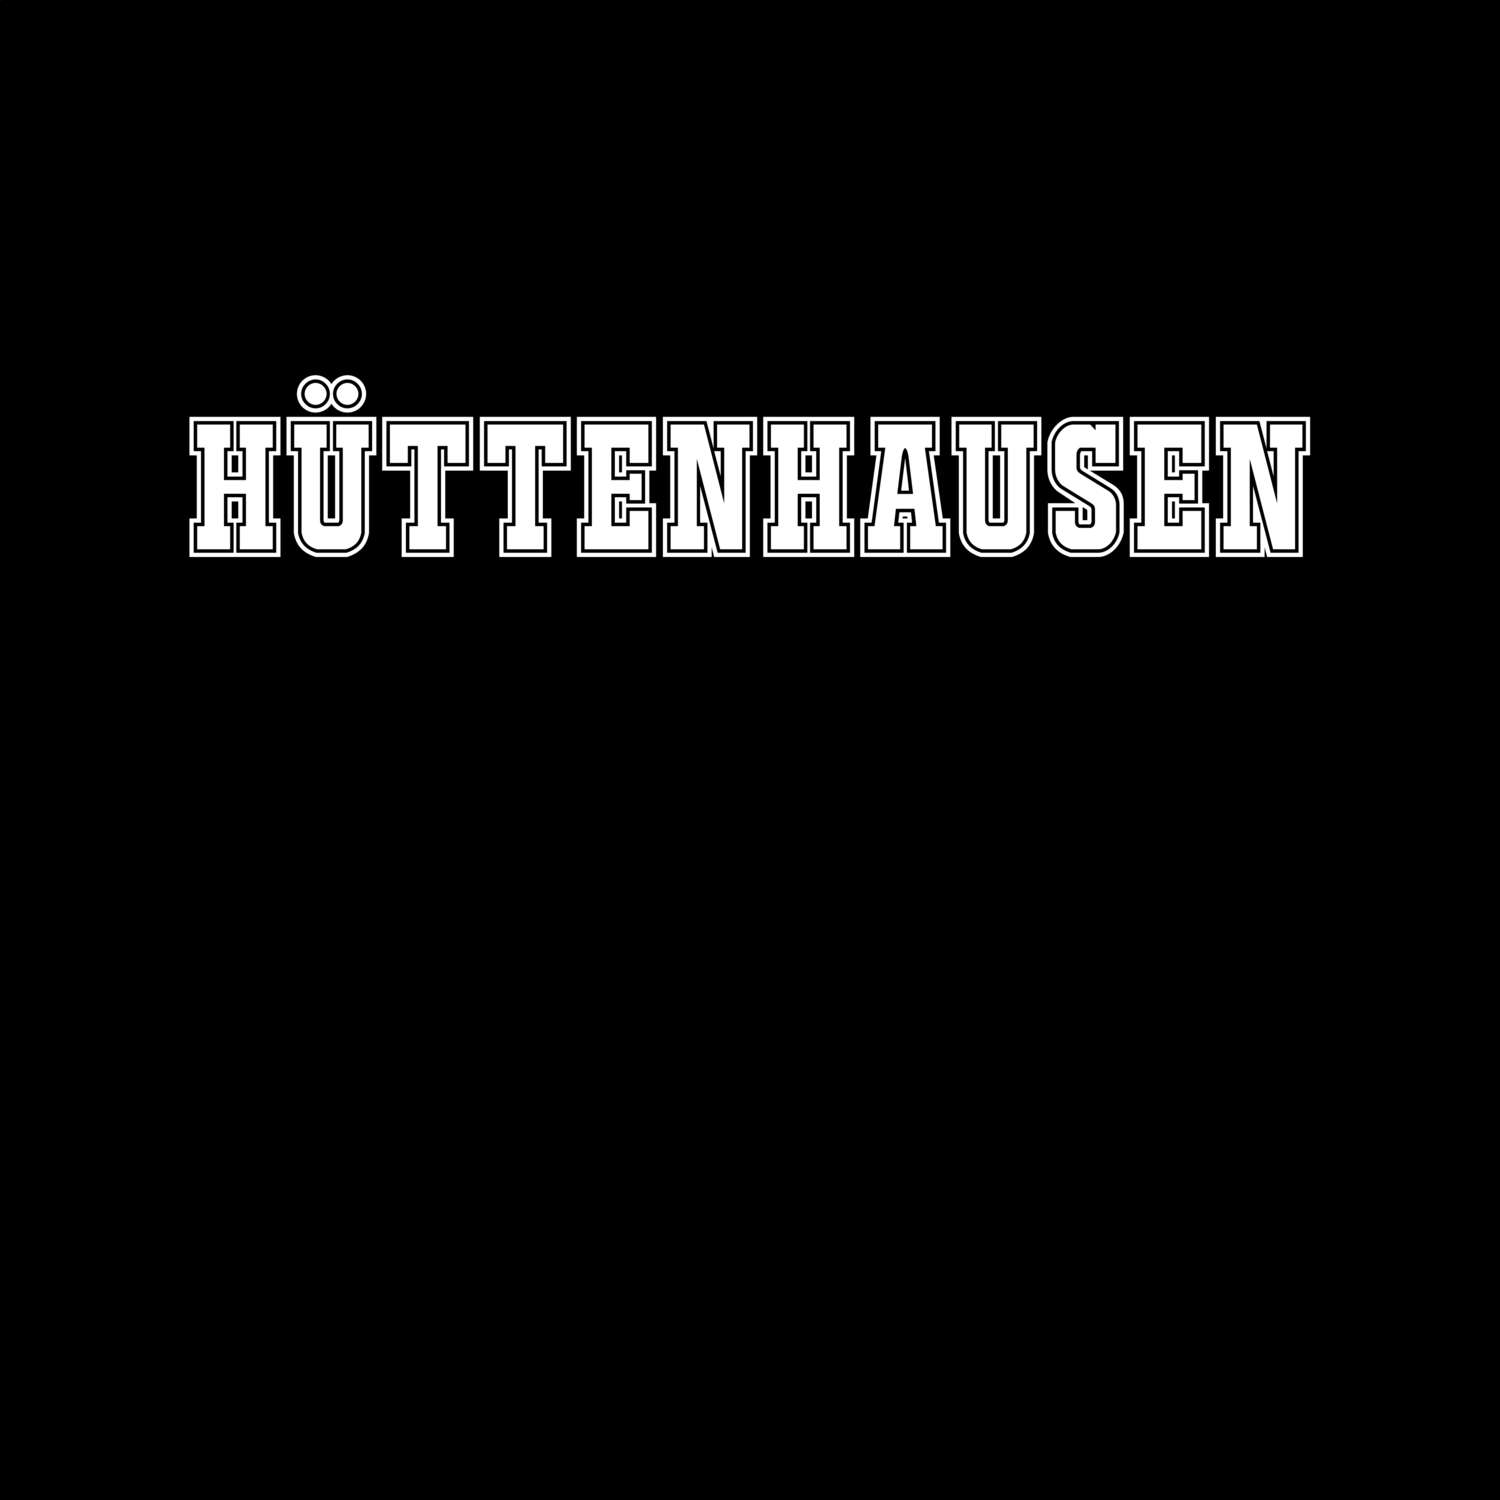 Hüttenhausen T-Shirt »Classic«